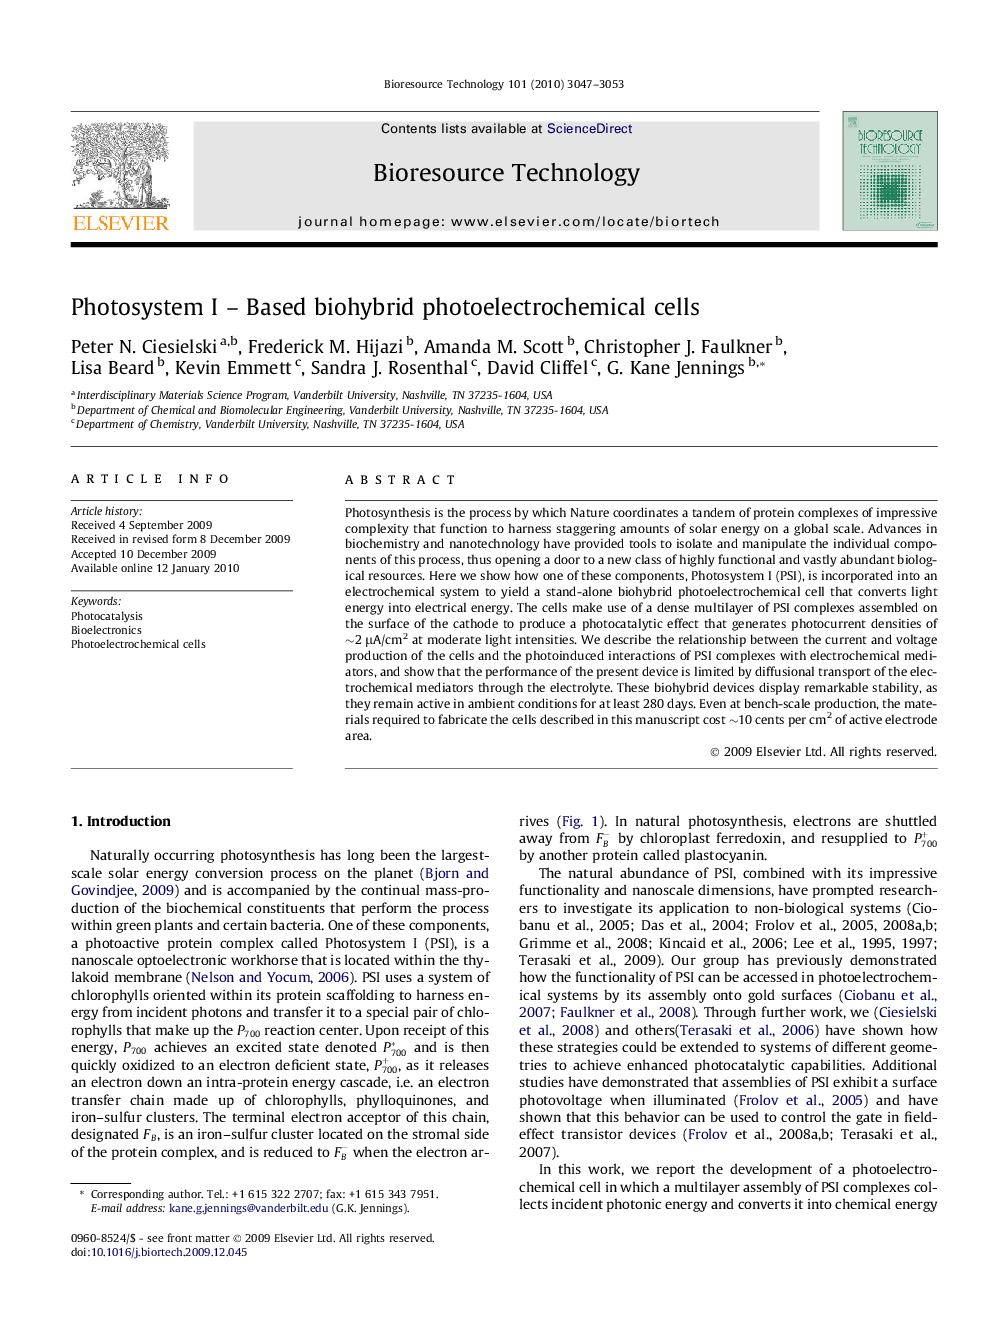 Photosystem I – Based biohybrid photoelectrochemical cells